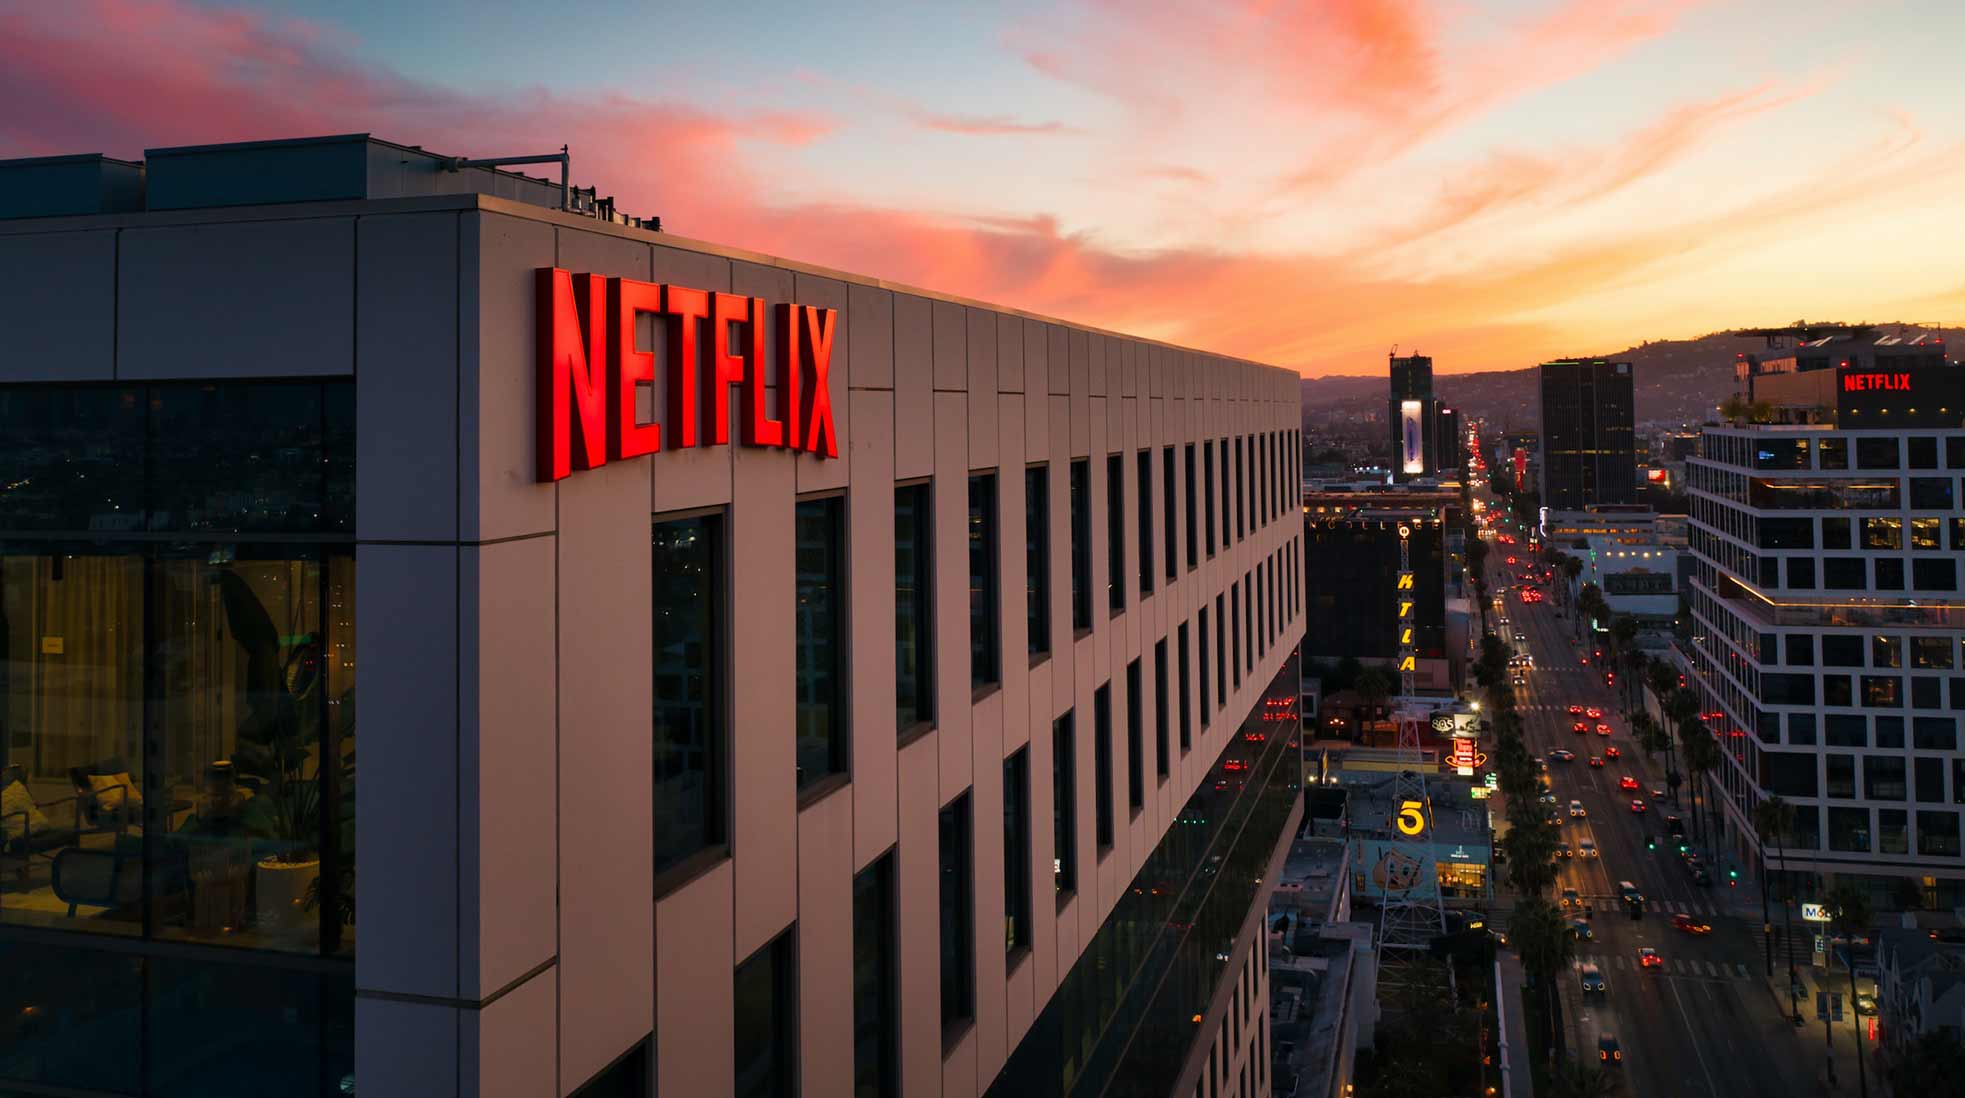 Netflix är ett av de företag som Candy Digital har på sin kundlista. Foto: Venti Views/Unsplash